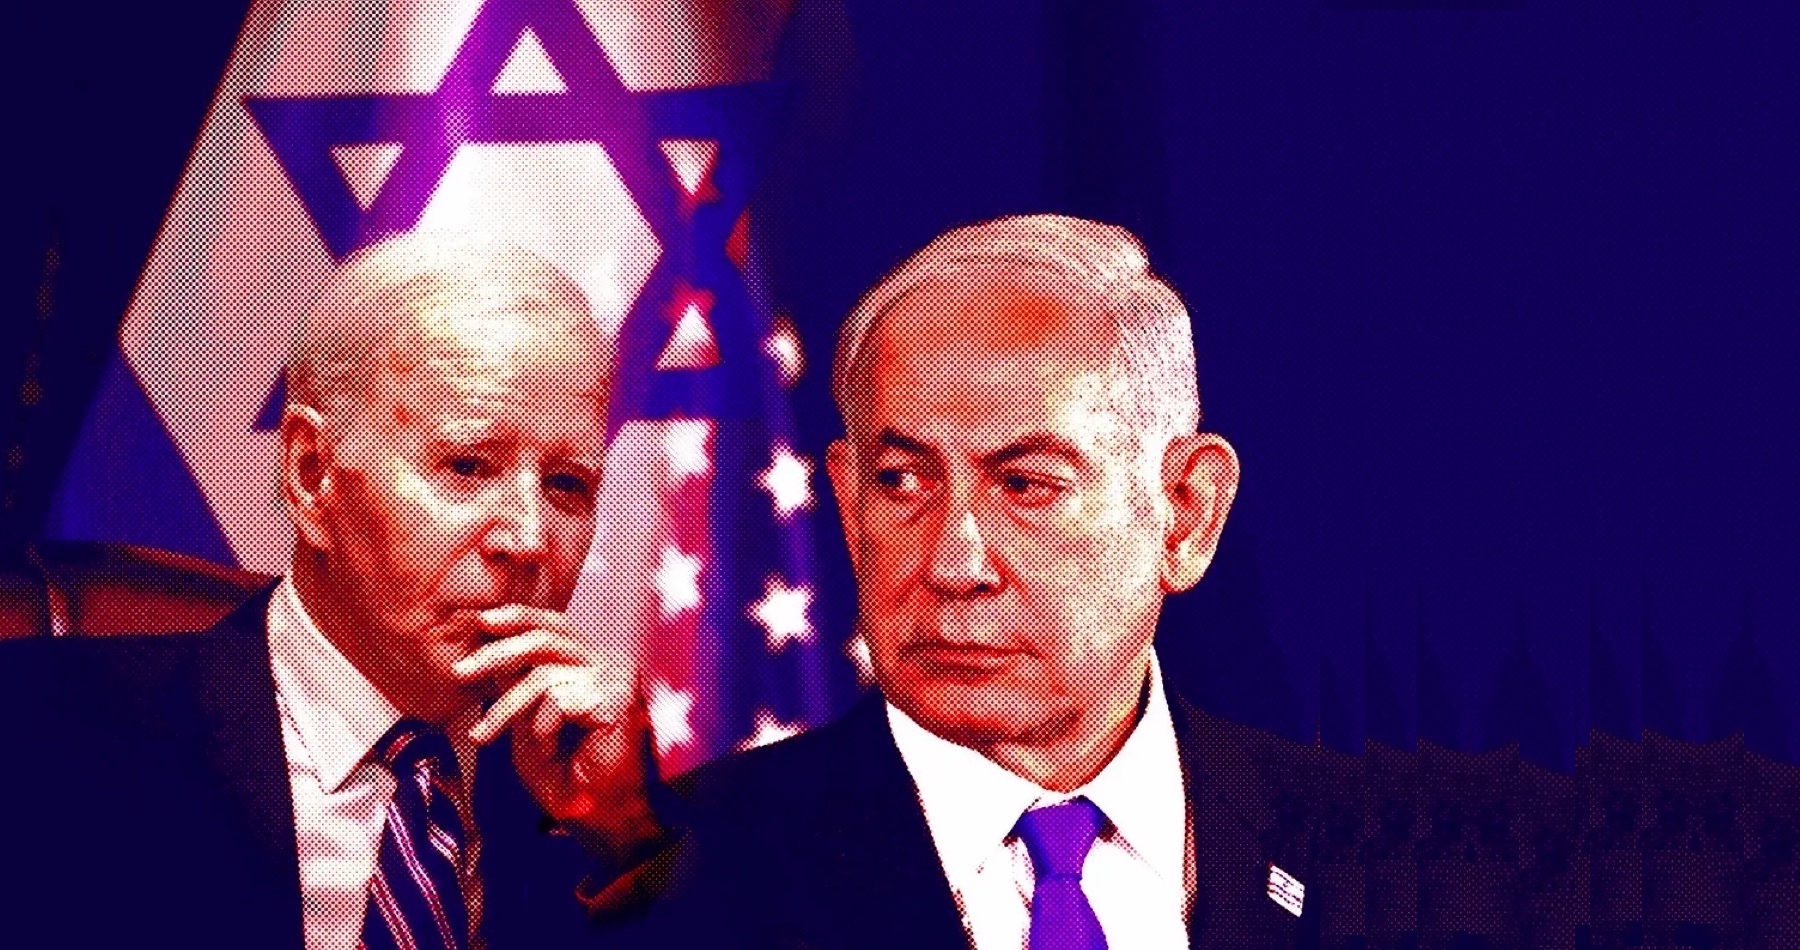 USA pozastavili dodávku viacúčelových bômb pre Izrael. Biden vyhlásil, že boli použité na zabíjanie palestínskych civilistov v Gaze